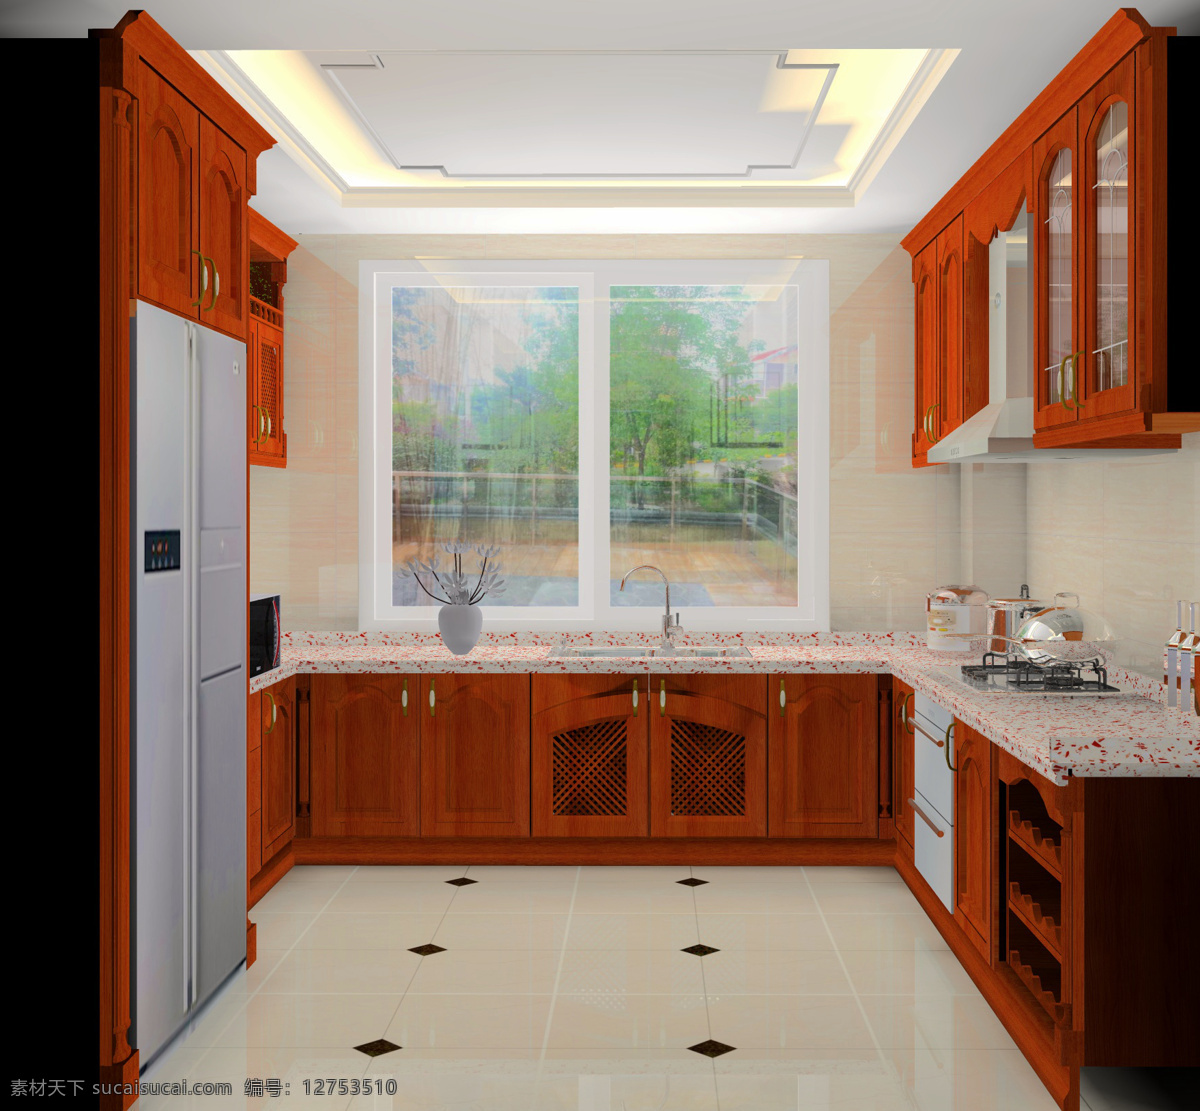 橱柜 效果图 3d设计 厨房 橱柜效果图 图 其他模型 3d模型素材 其他3d模型